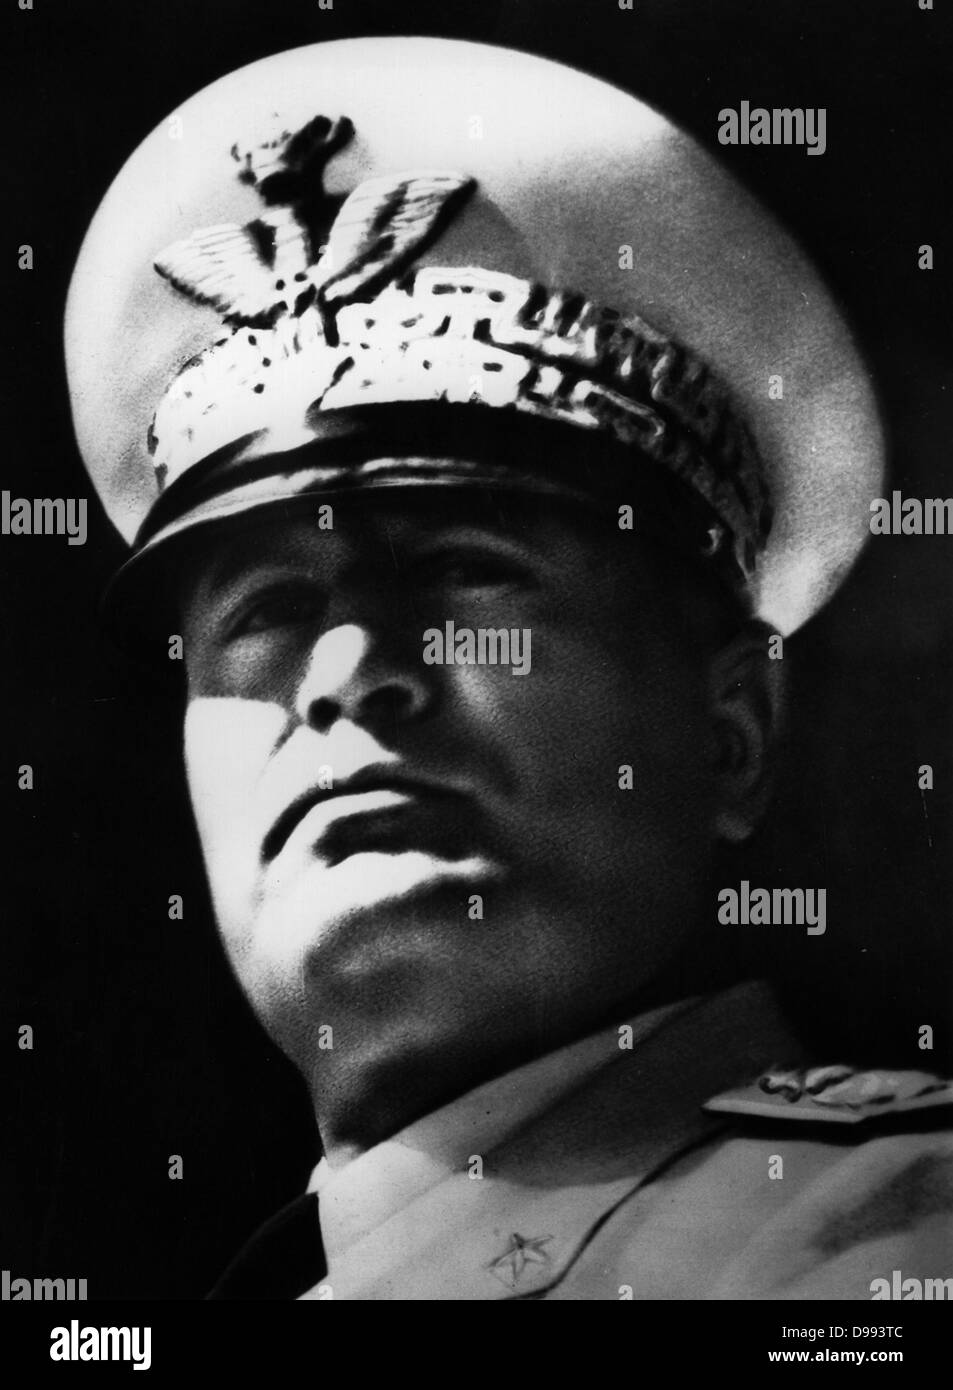 Benito Mussolini,(29 Juillet 1883 - 28 avril 1945)homme politique italien qui a dirigé le parti fasciste National Premier Ministre de l'Italie en 1922 et a commencé à utiliser le titre Il Duce en 1925. Après 1936, son titre officiel était "Son Excellence Benito Mussolini, chef du gouvernement Banque D'Images